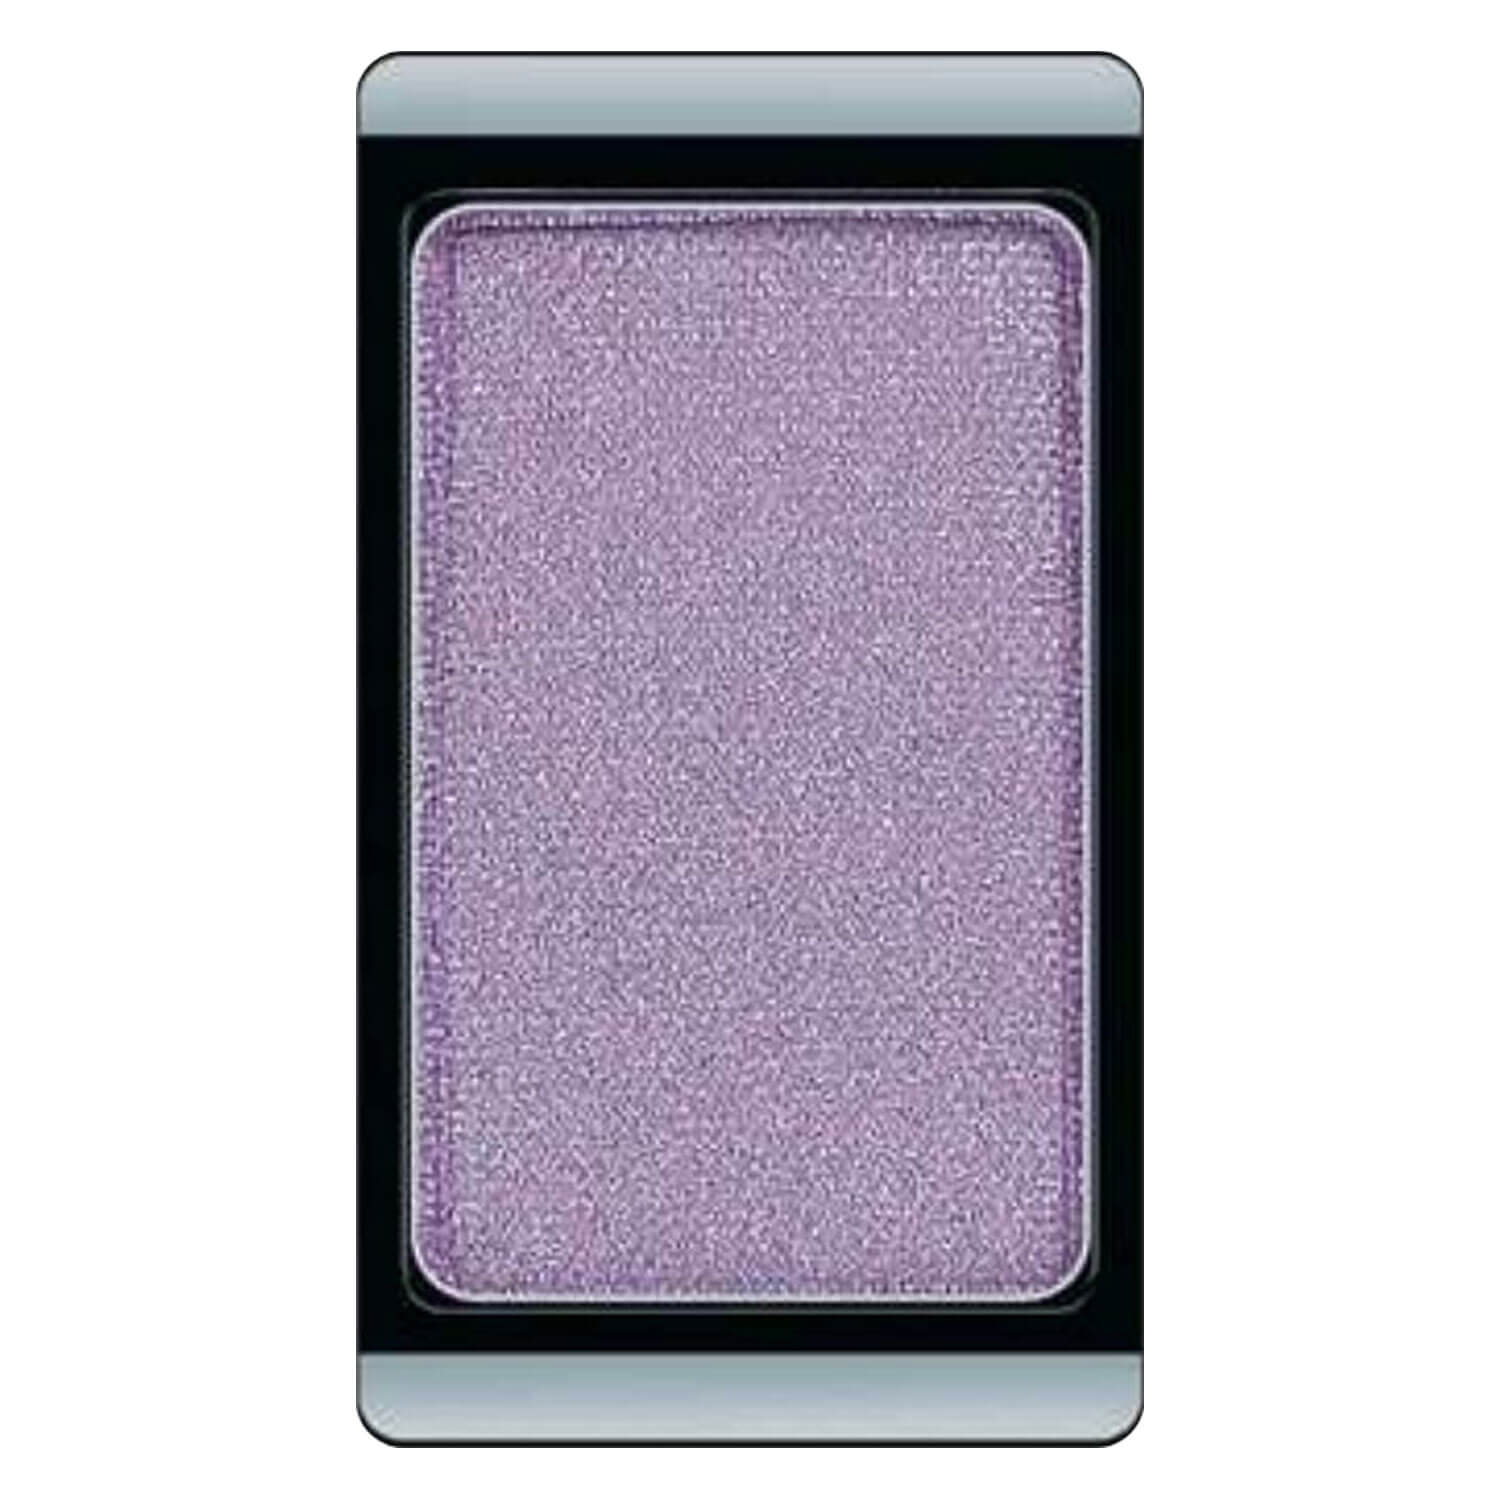 Produktbild von Eyeshadow Pearl - Antique Purple 90